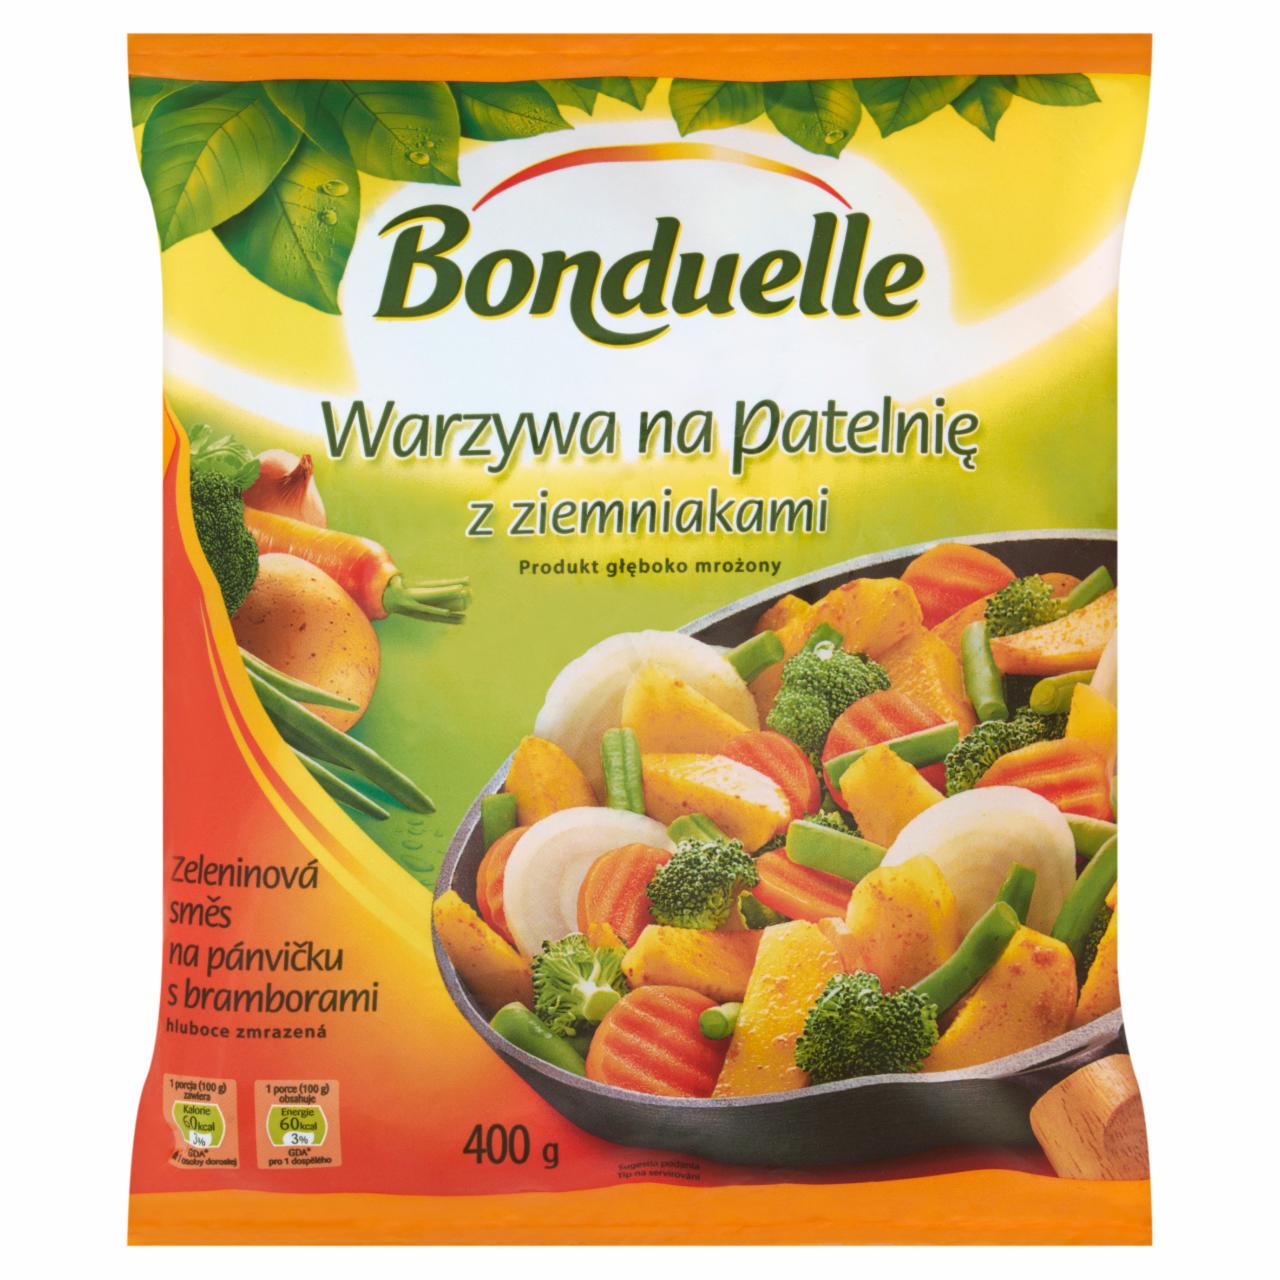 Zdjęcia - Bonduelle Warzywa na patelnię z ziemniakami 400 g